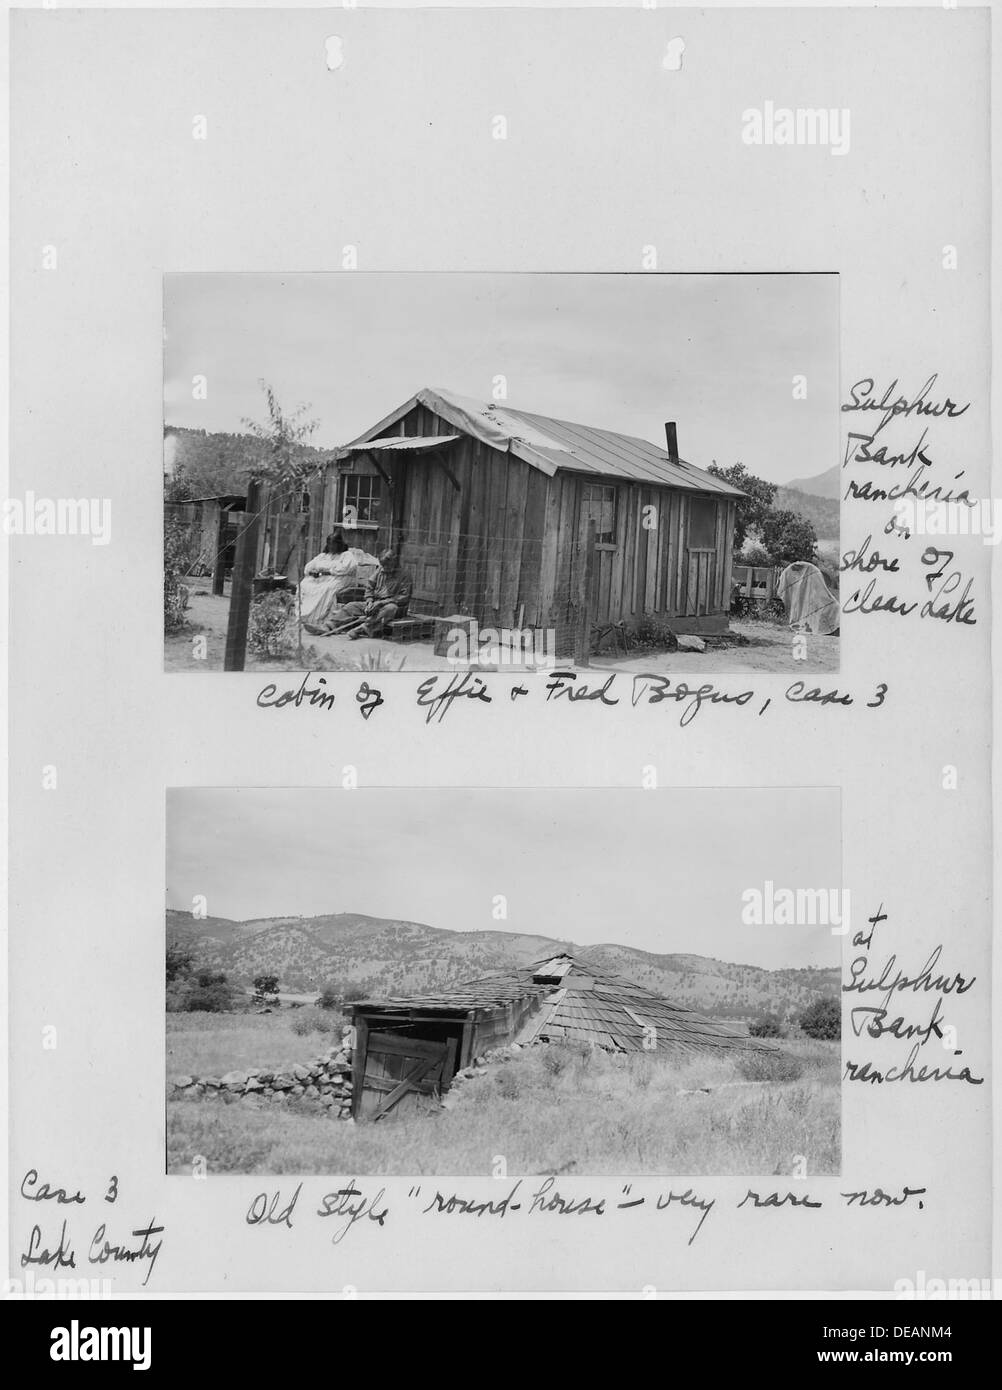 Des photographies, avec des légendes, des foyers à Banque de soufre, Rancheria Lake County, en Californie, de sécurité de 296277. Banque D'Images